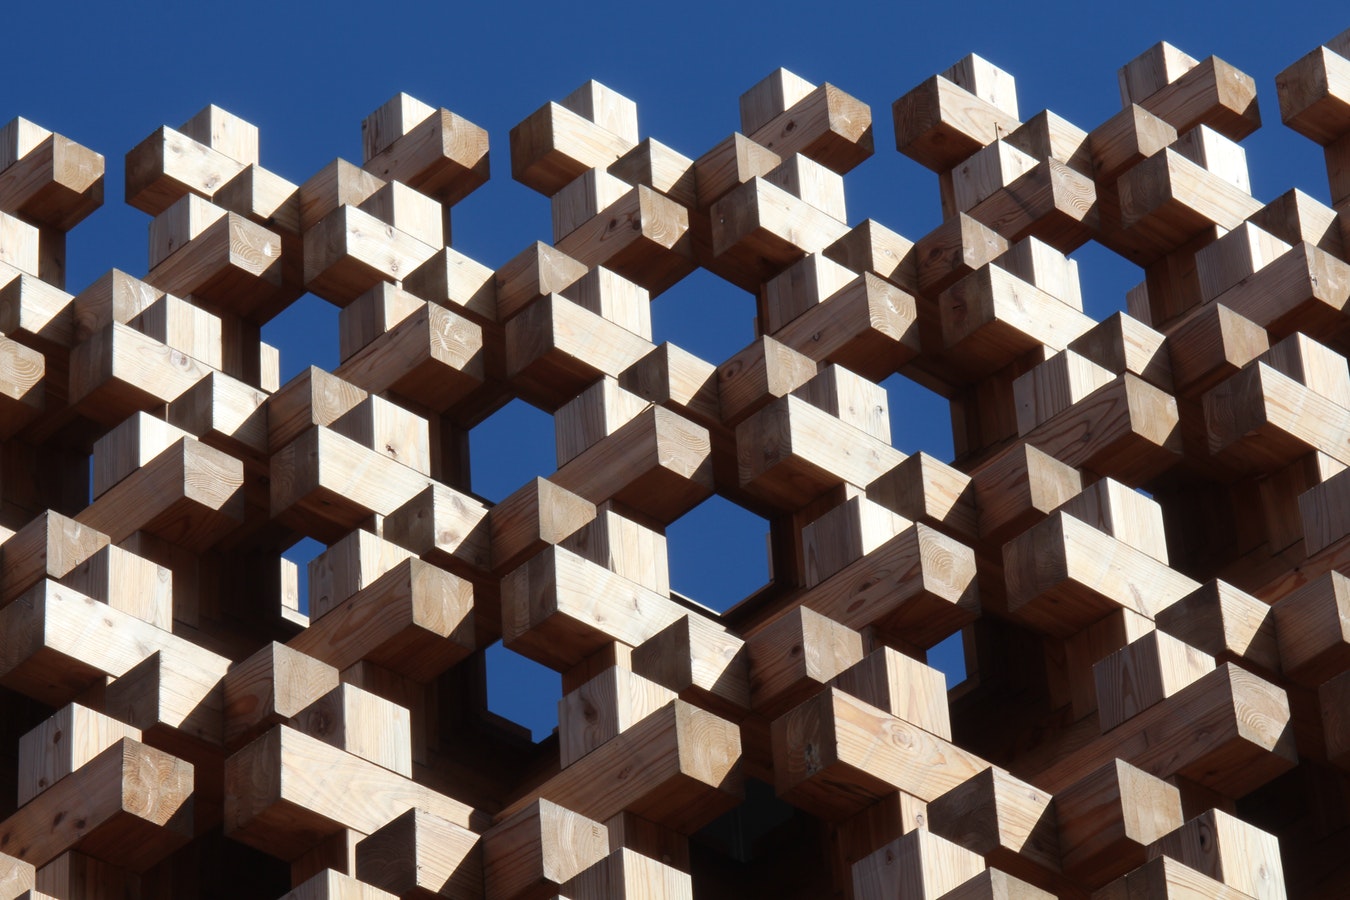 Wooden blocks representing links